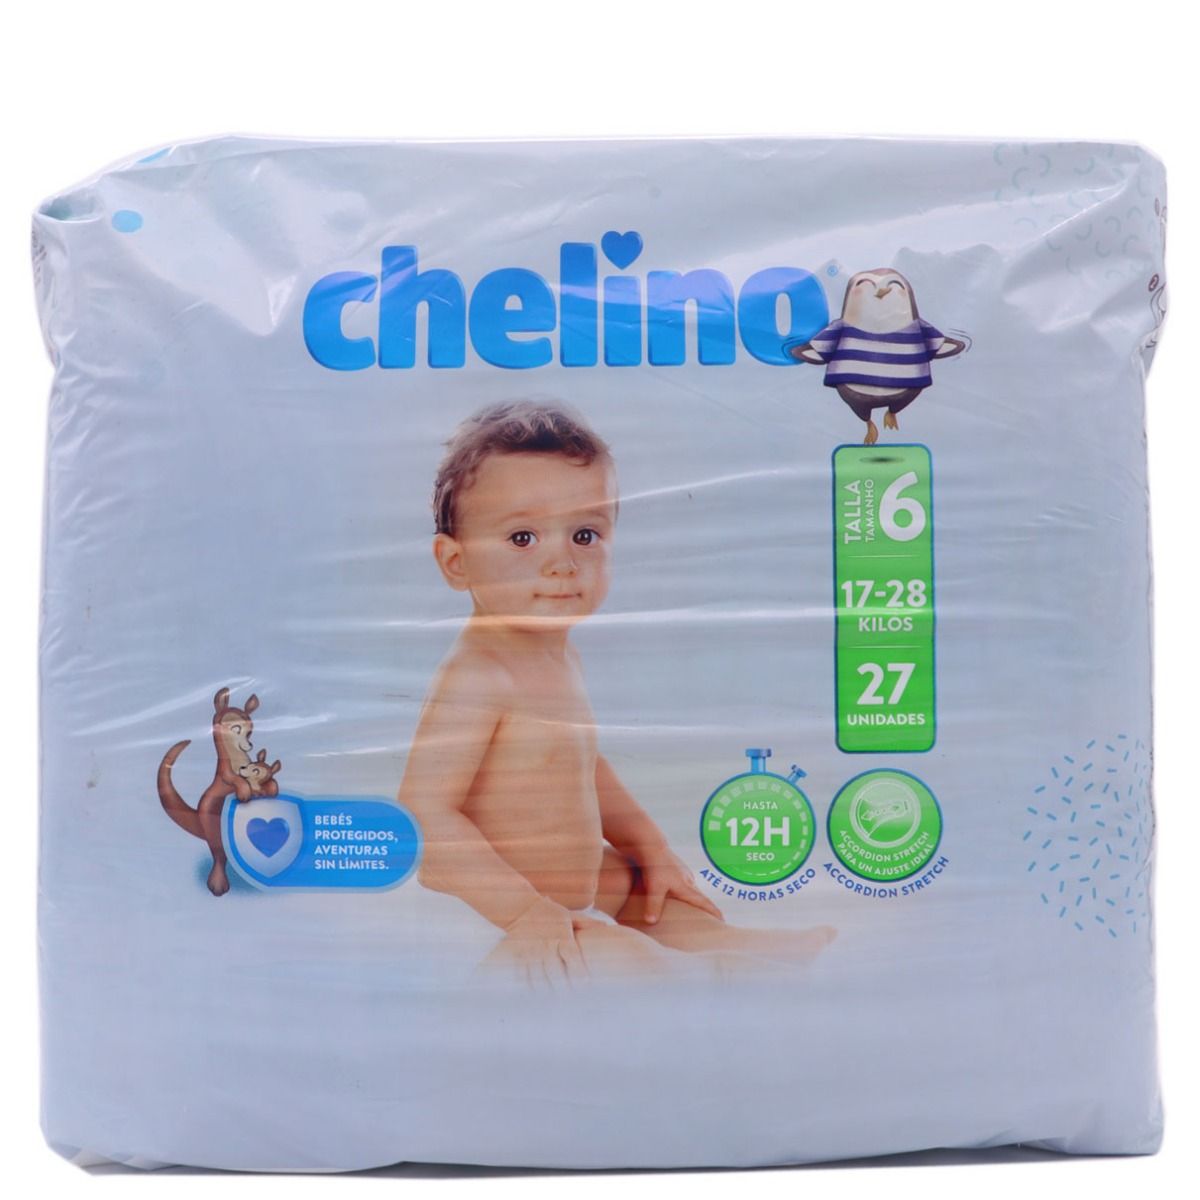 Chelino Fashion&Love - Los pañales Chelino Nature crecen con tu peque.😊  Disponemos de tallas para los bebés más pequeños, desde 1 kg de peso, hasta  los más mayorcitos, 28 kg. ¿Qué talla